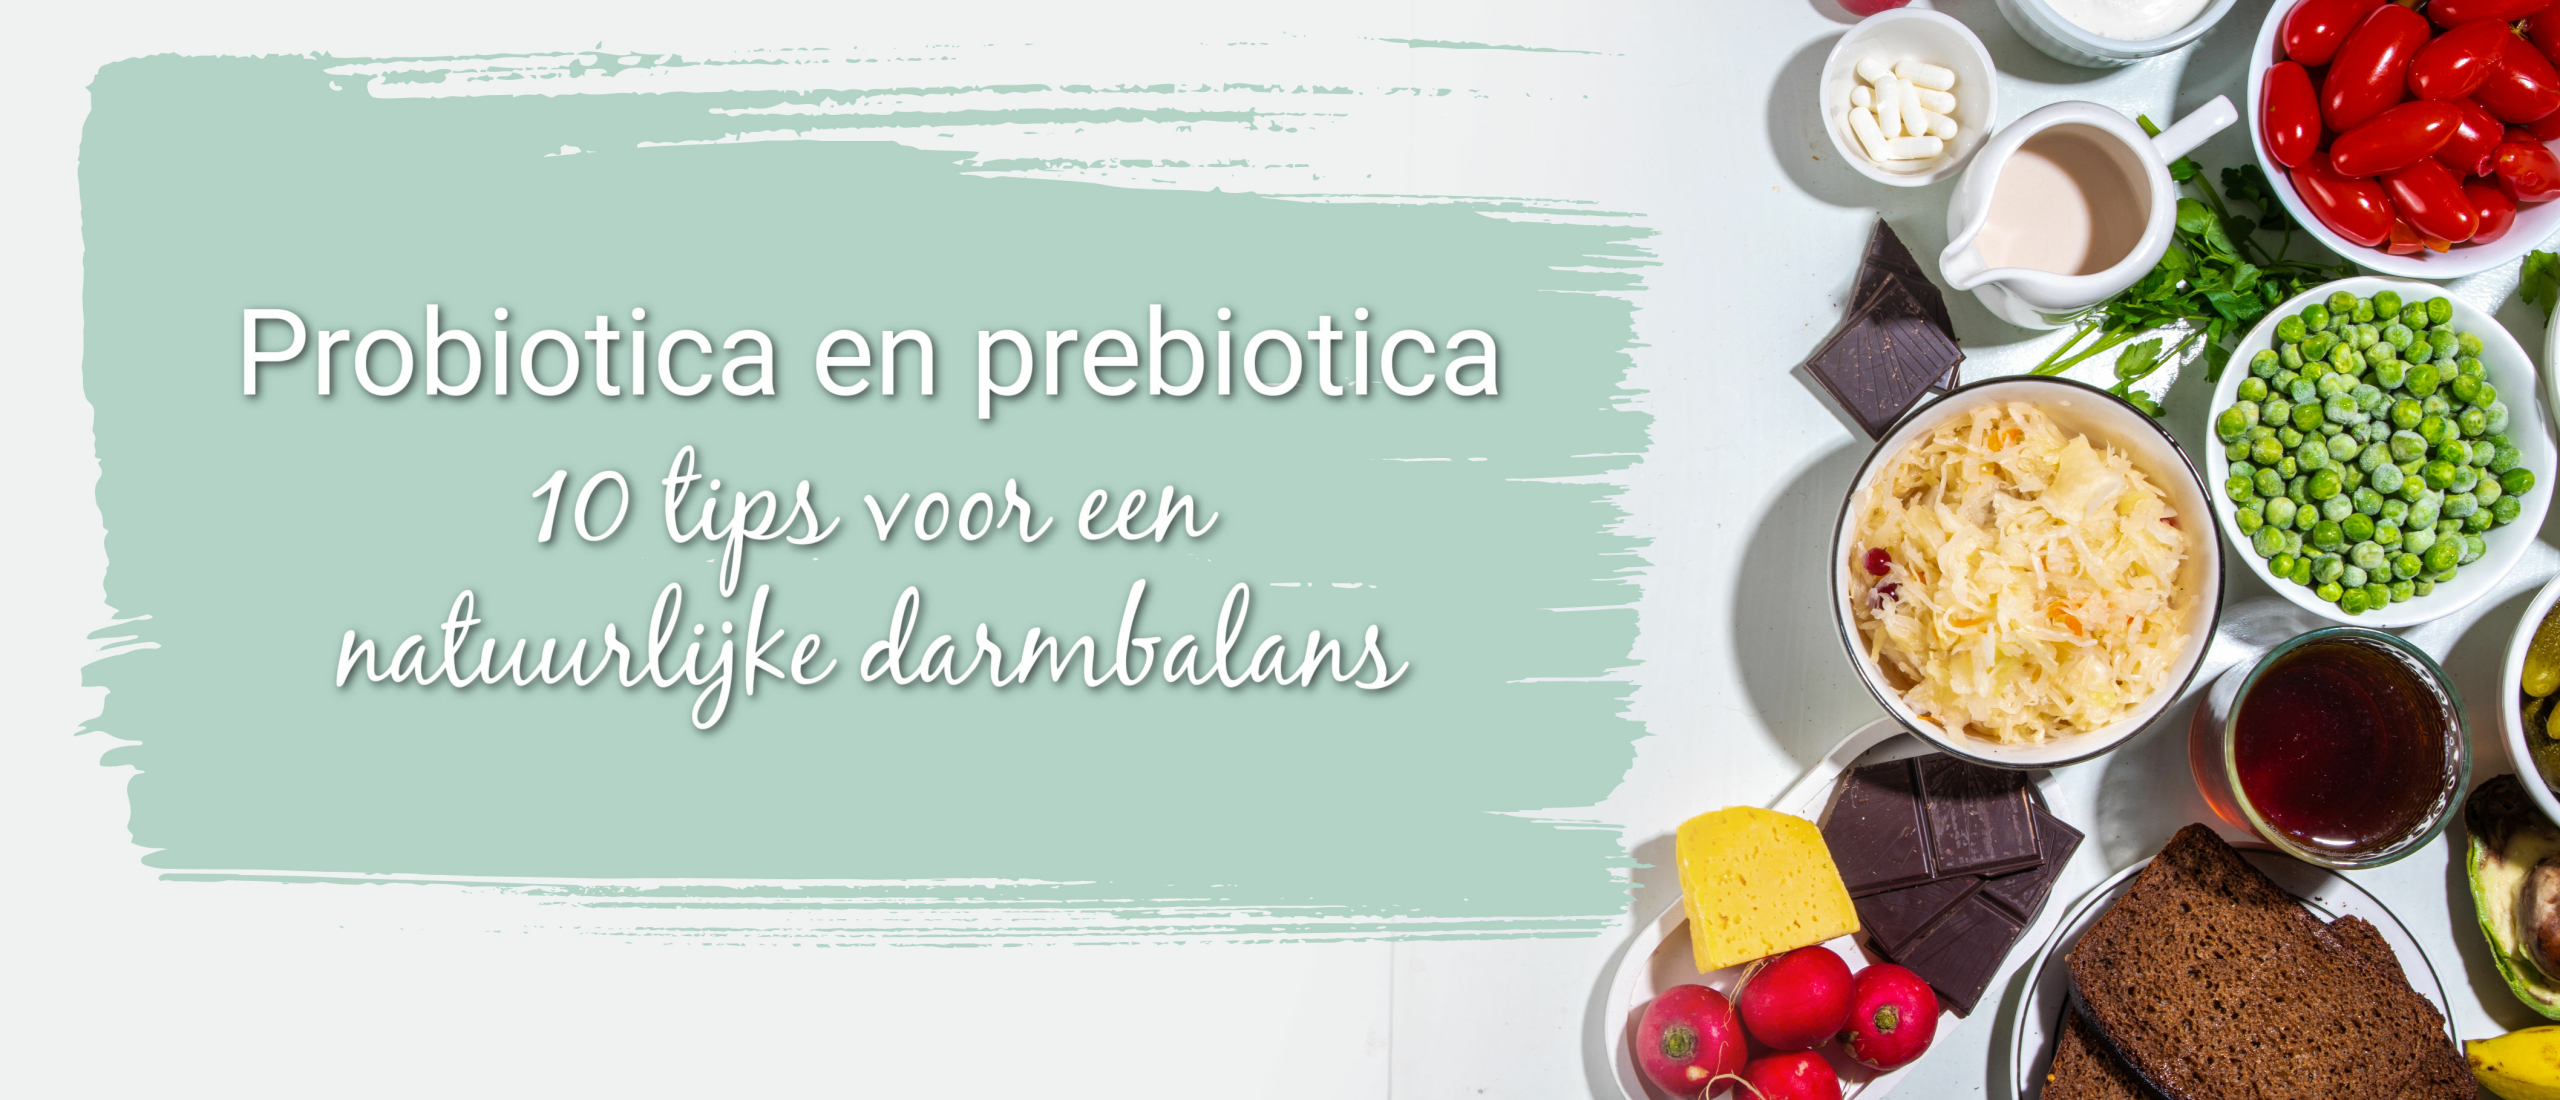 probiotica en prebiotica